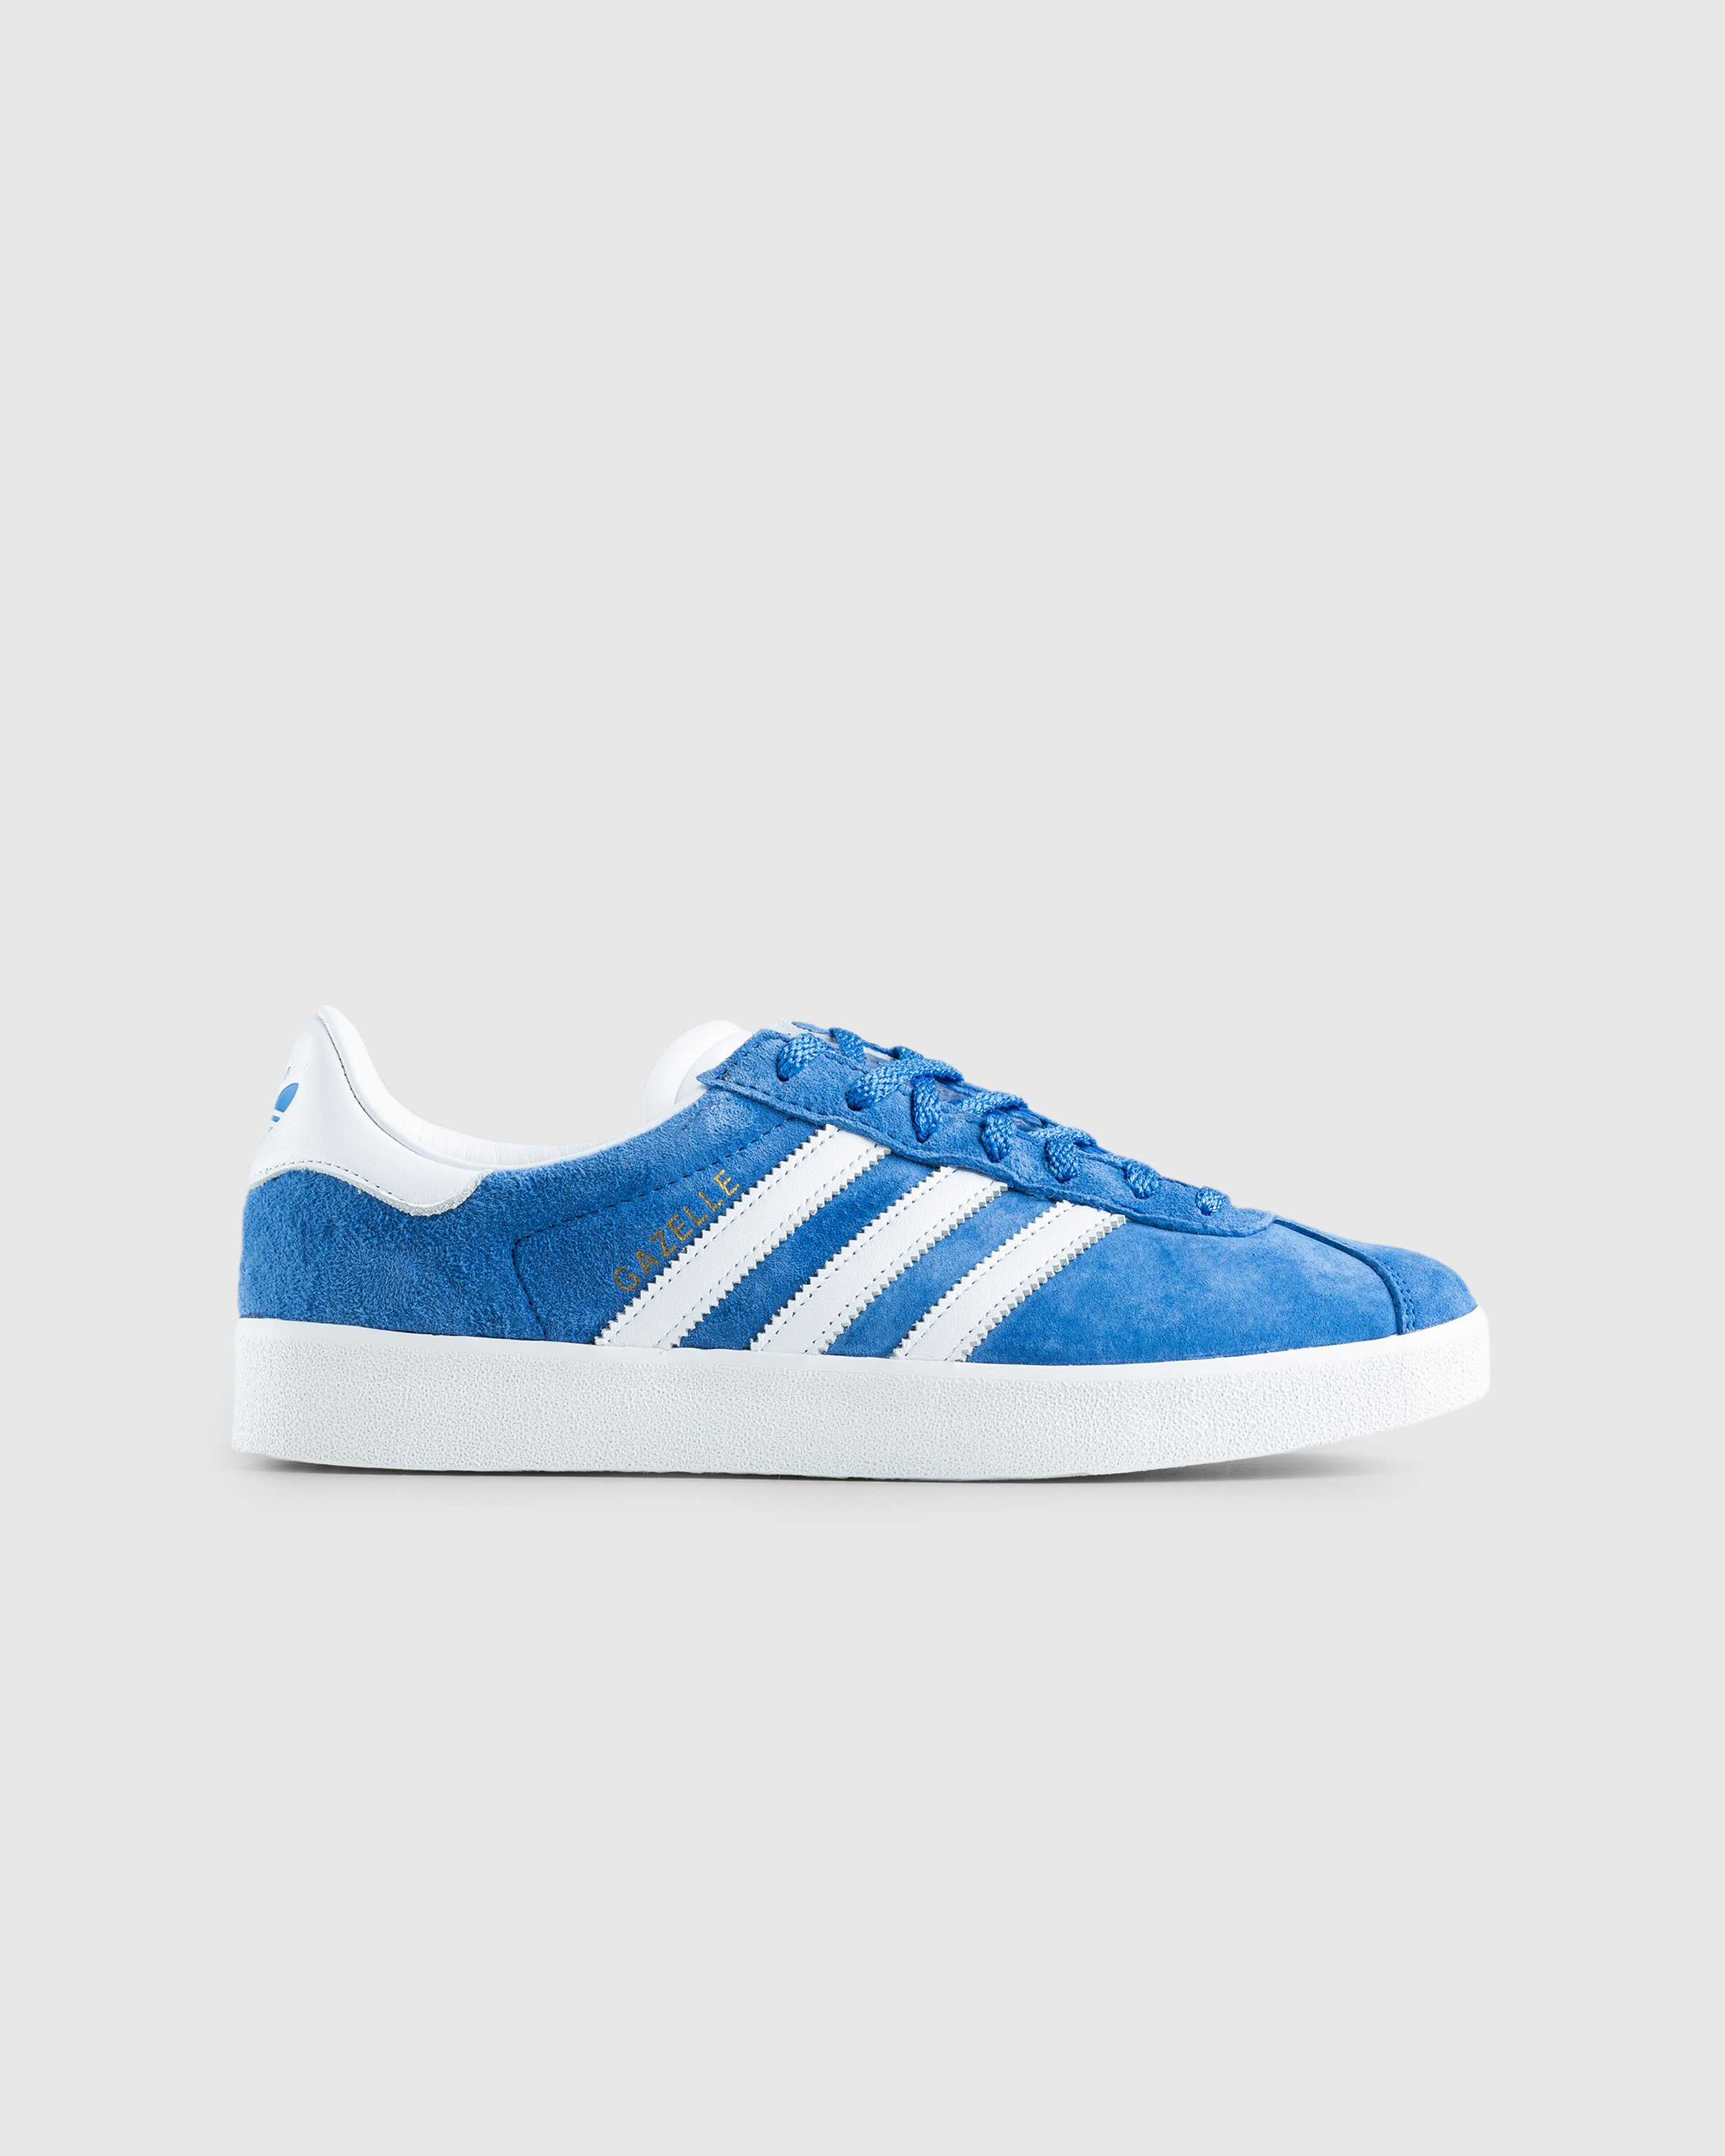 Adidas - Gazelle 85 Blue - Footwear - Blue - Image 1